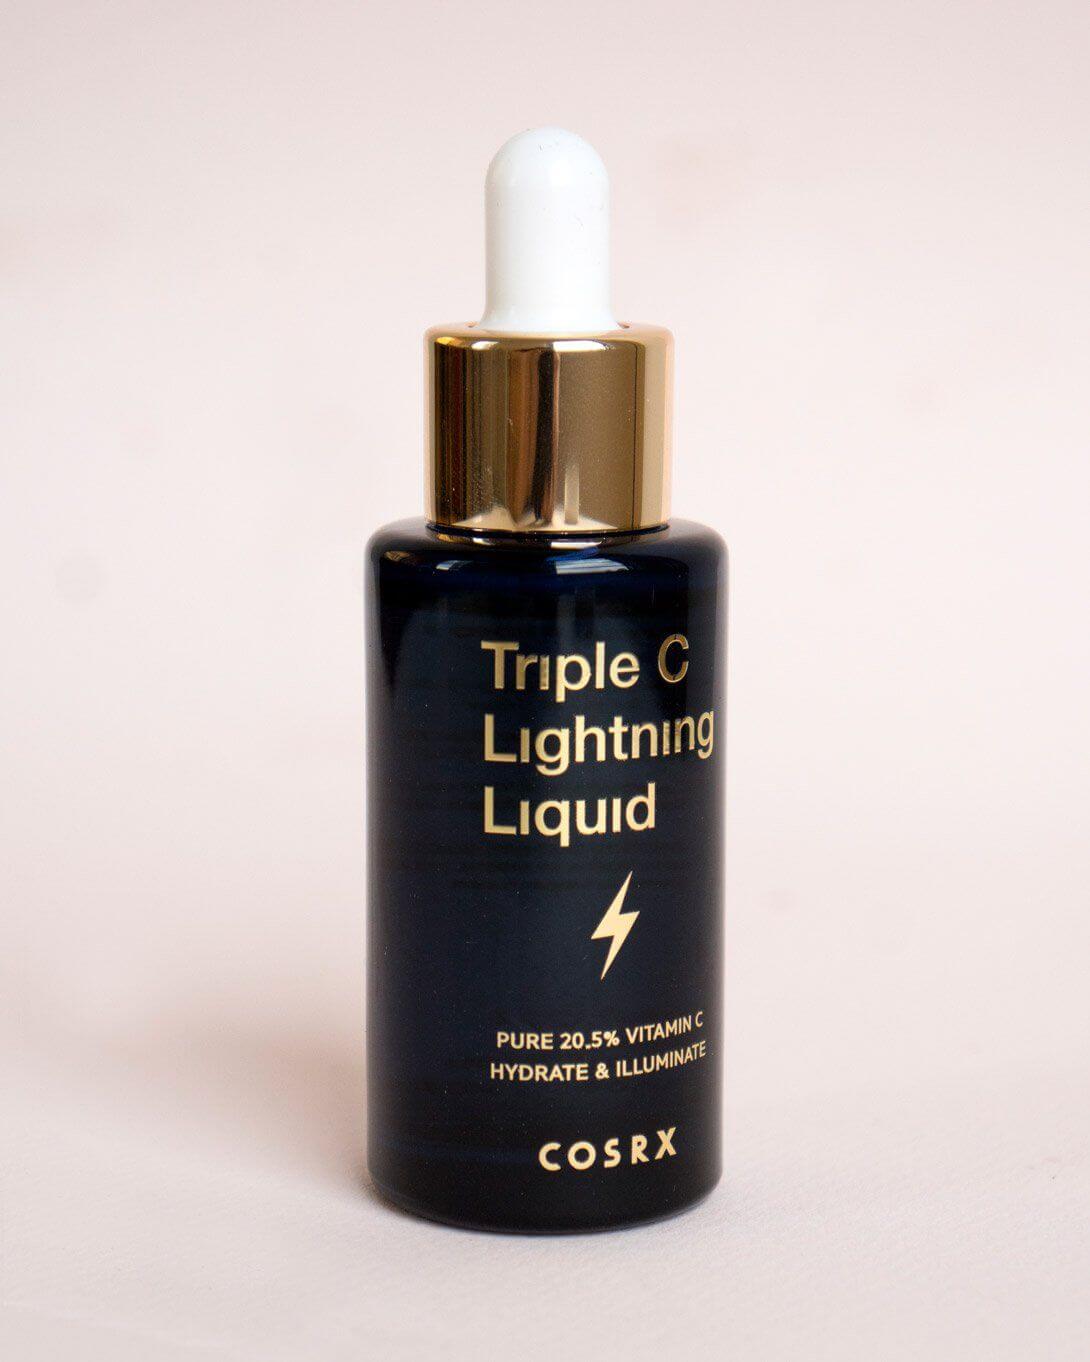 這支來自韓國品牌COSRX 的 Triple C Lightning Liquid，有抗氧化及阻止色素生產的作用，同時亦能提高皮膚光澤度。產品的成份含的維他命C是市面上數一數二的高，因此使用時只需加入小量於個人護膚品，就能達致保護肌膚的效果。